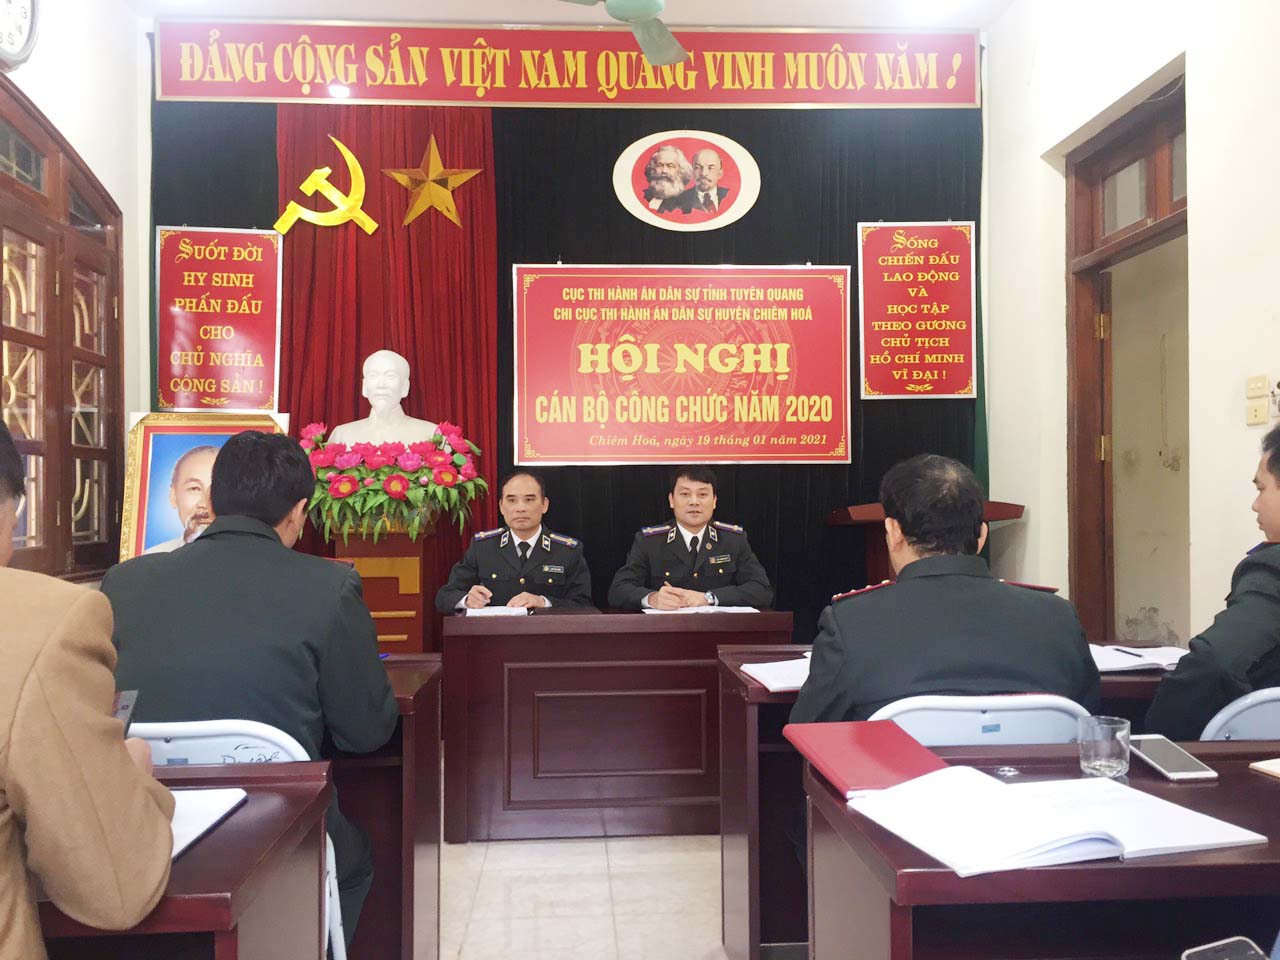 Chi cục THADS huyện Chiêm Hóa tổ chức Hội nghị cán bộ, công chức năm 2020